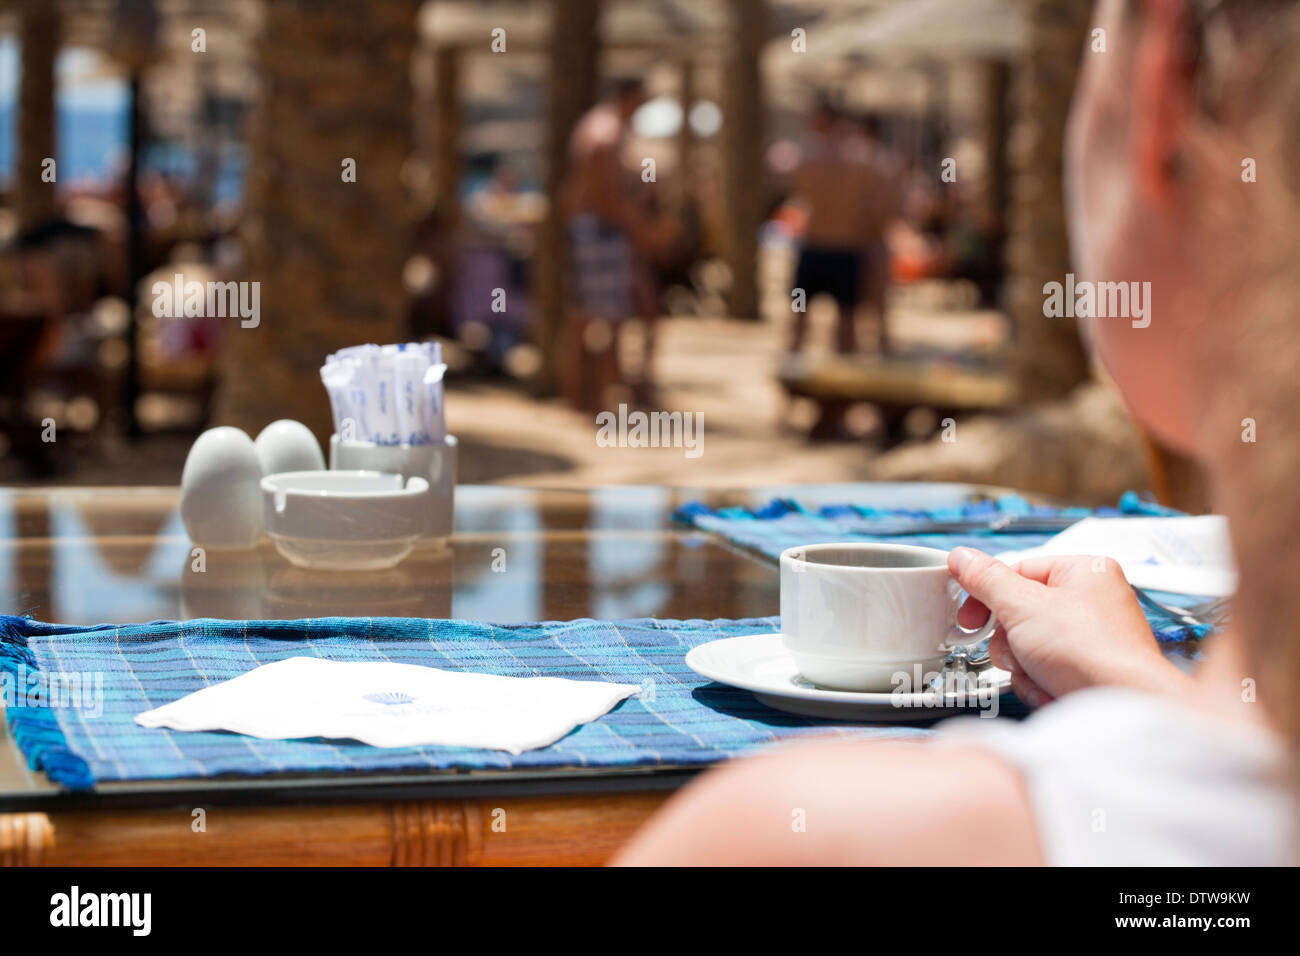 Abstract shallow mettere a fuoco l'immagine di una donna con caffè in uno dei bar sulla spiaggia Foto Stock